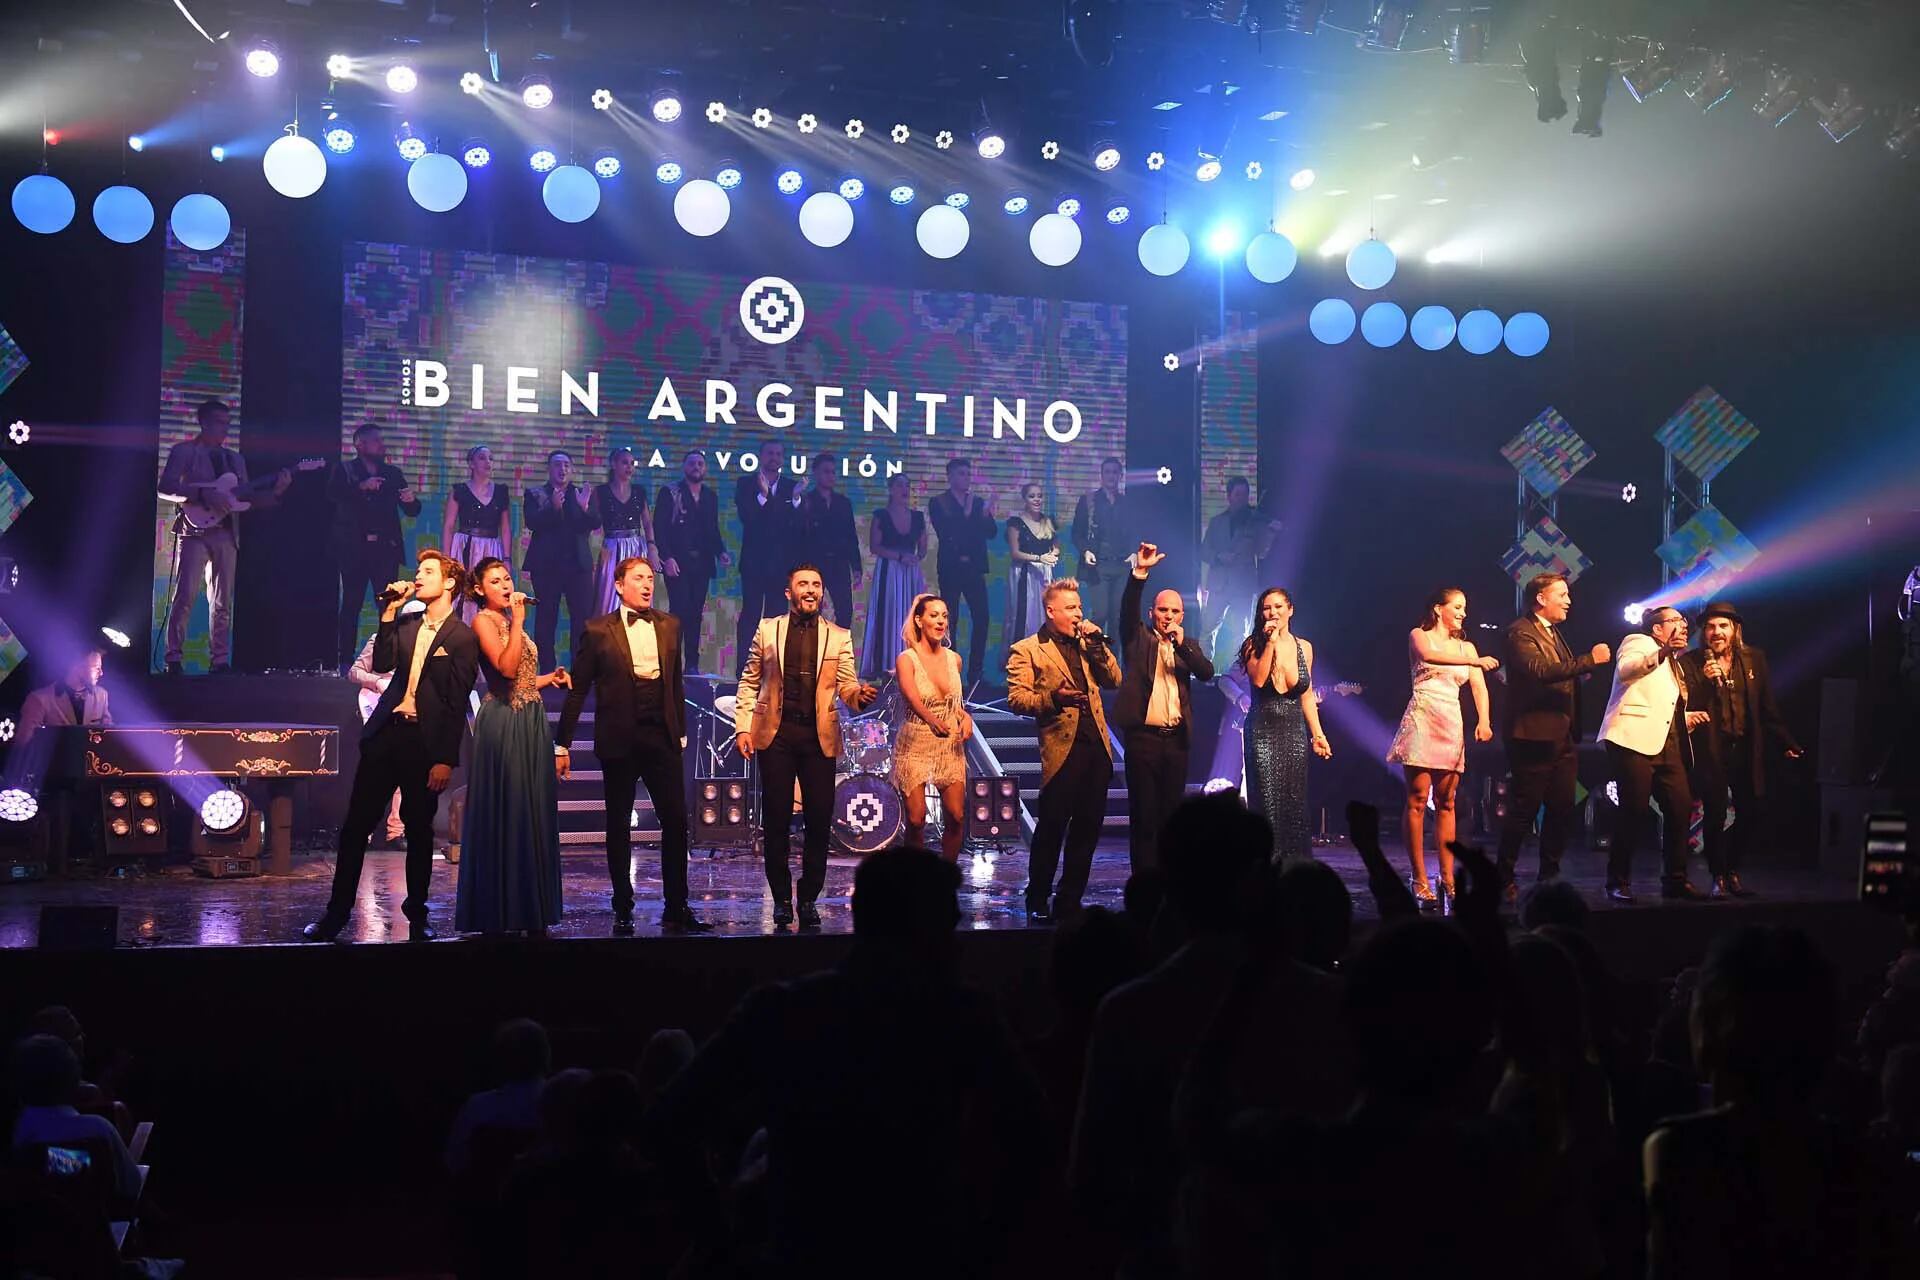 El saludo final de Bien Argentino